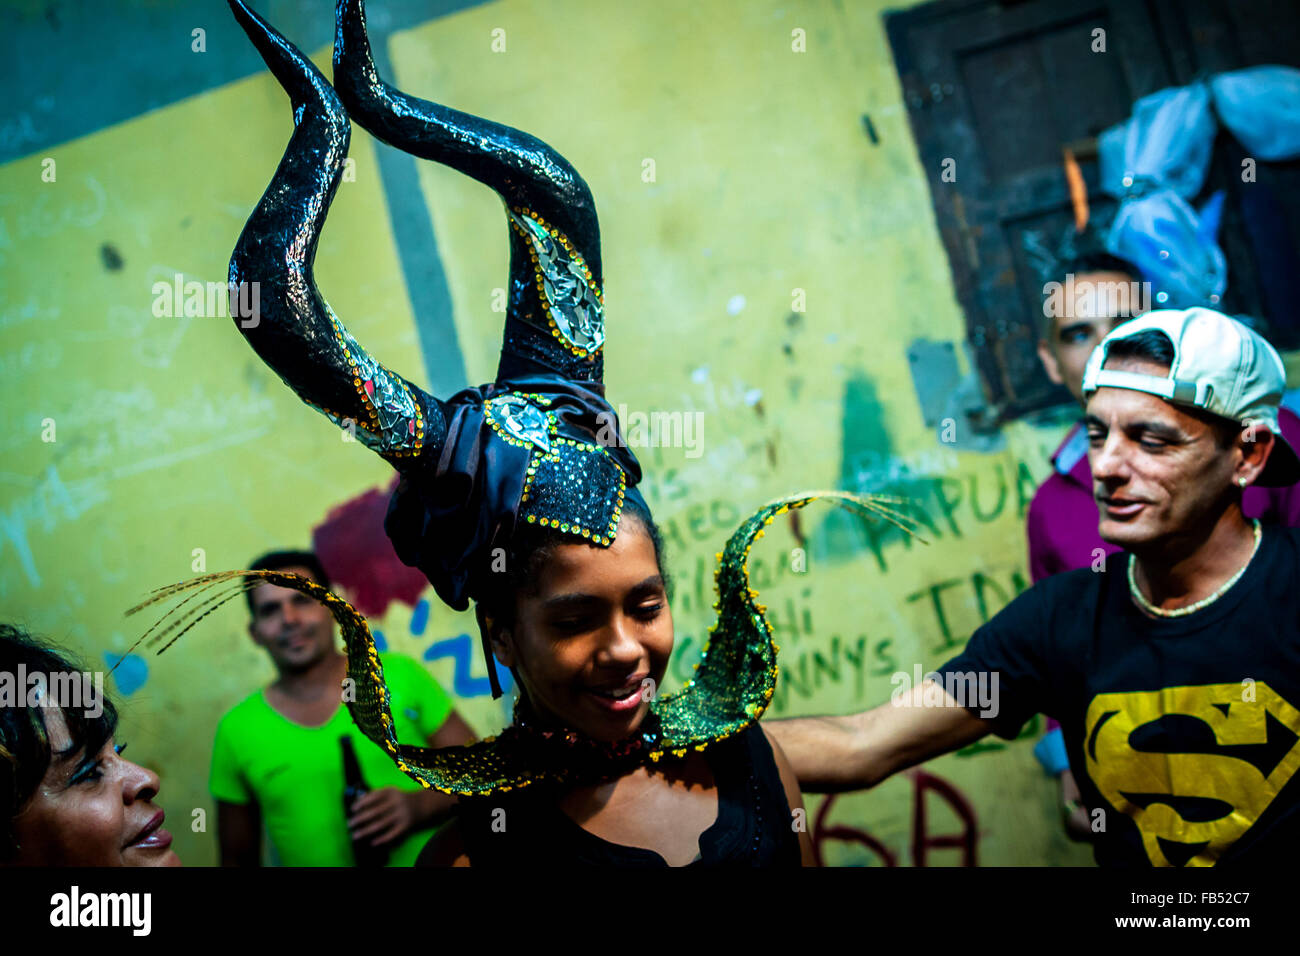 Mayabeque. 9. Januar 2016. Amateur Darsteller bereiten Sie zur Teilnahme an der traditionellen "Charangas" Zeremonie in einer kleinen Stadt in Mayabeque Provinz von Kuba, 9. Januar 2016. Anwohner feierte das neue Jahr 2016 mit einer traditionellen Zeremonie "Charangas" hier vor der Morgendämmerung am Samstag. Gut geschmückten Wagen umgeben mit farbigen Lampen beleuchtet die Kleinstadt. Als eines der am meisten verwurzelte Feste in der kubanischen Tradition wurde die Musikkapellen kubanischen Kulturerbe im Jahr 2015 gewählt. Bildnachweis: Liu Bin/Xinhua/Alamy Live-Nachrichten Stockfoto